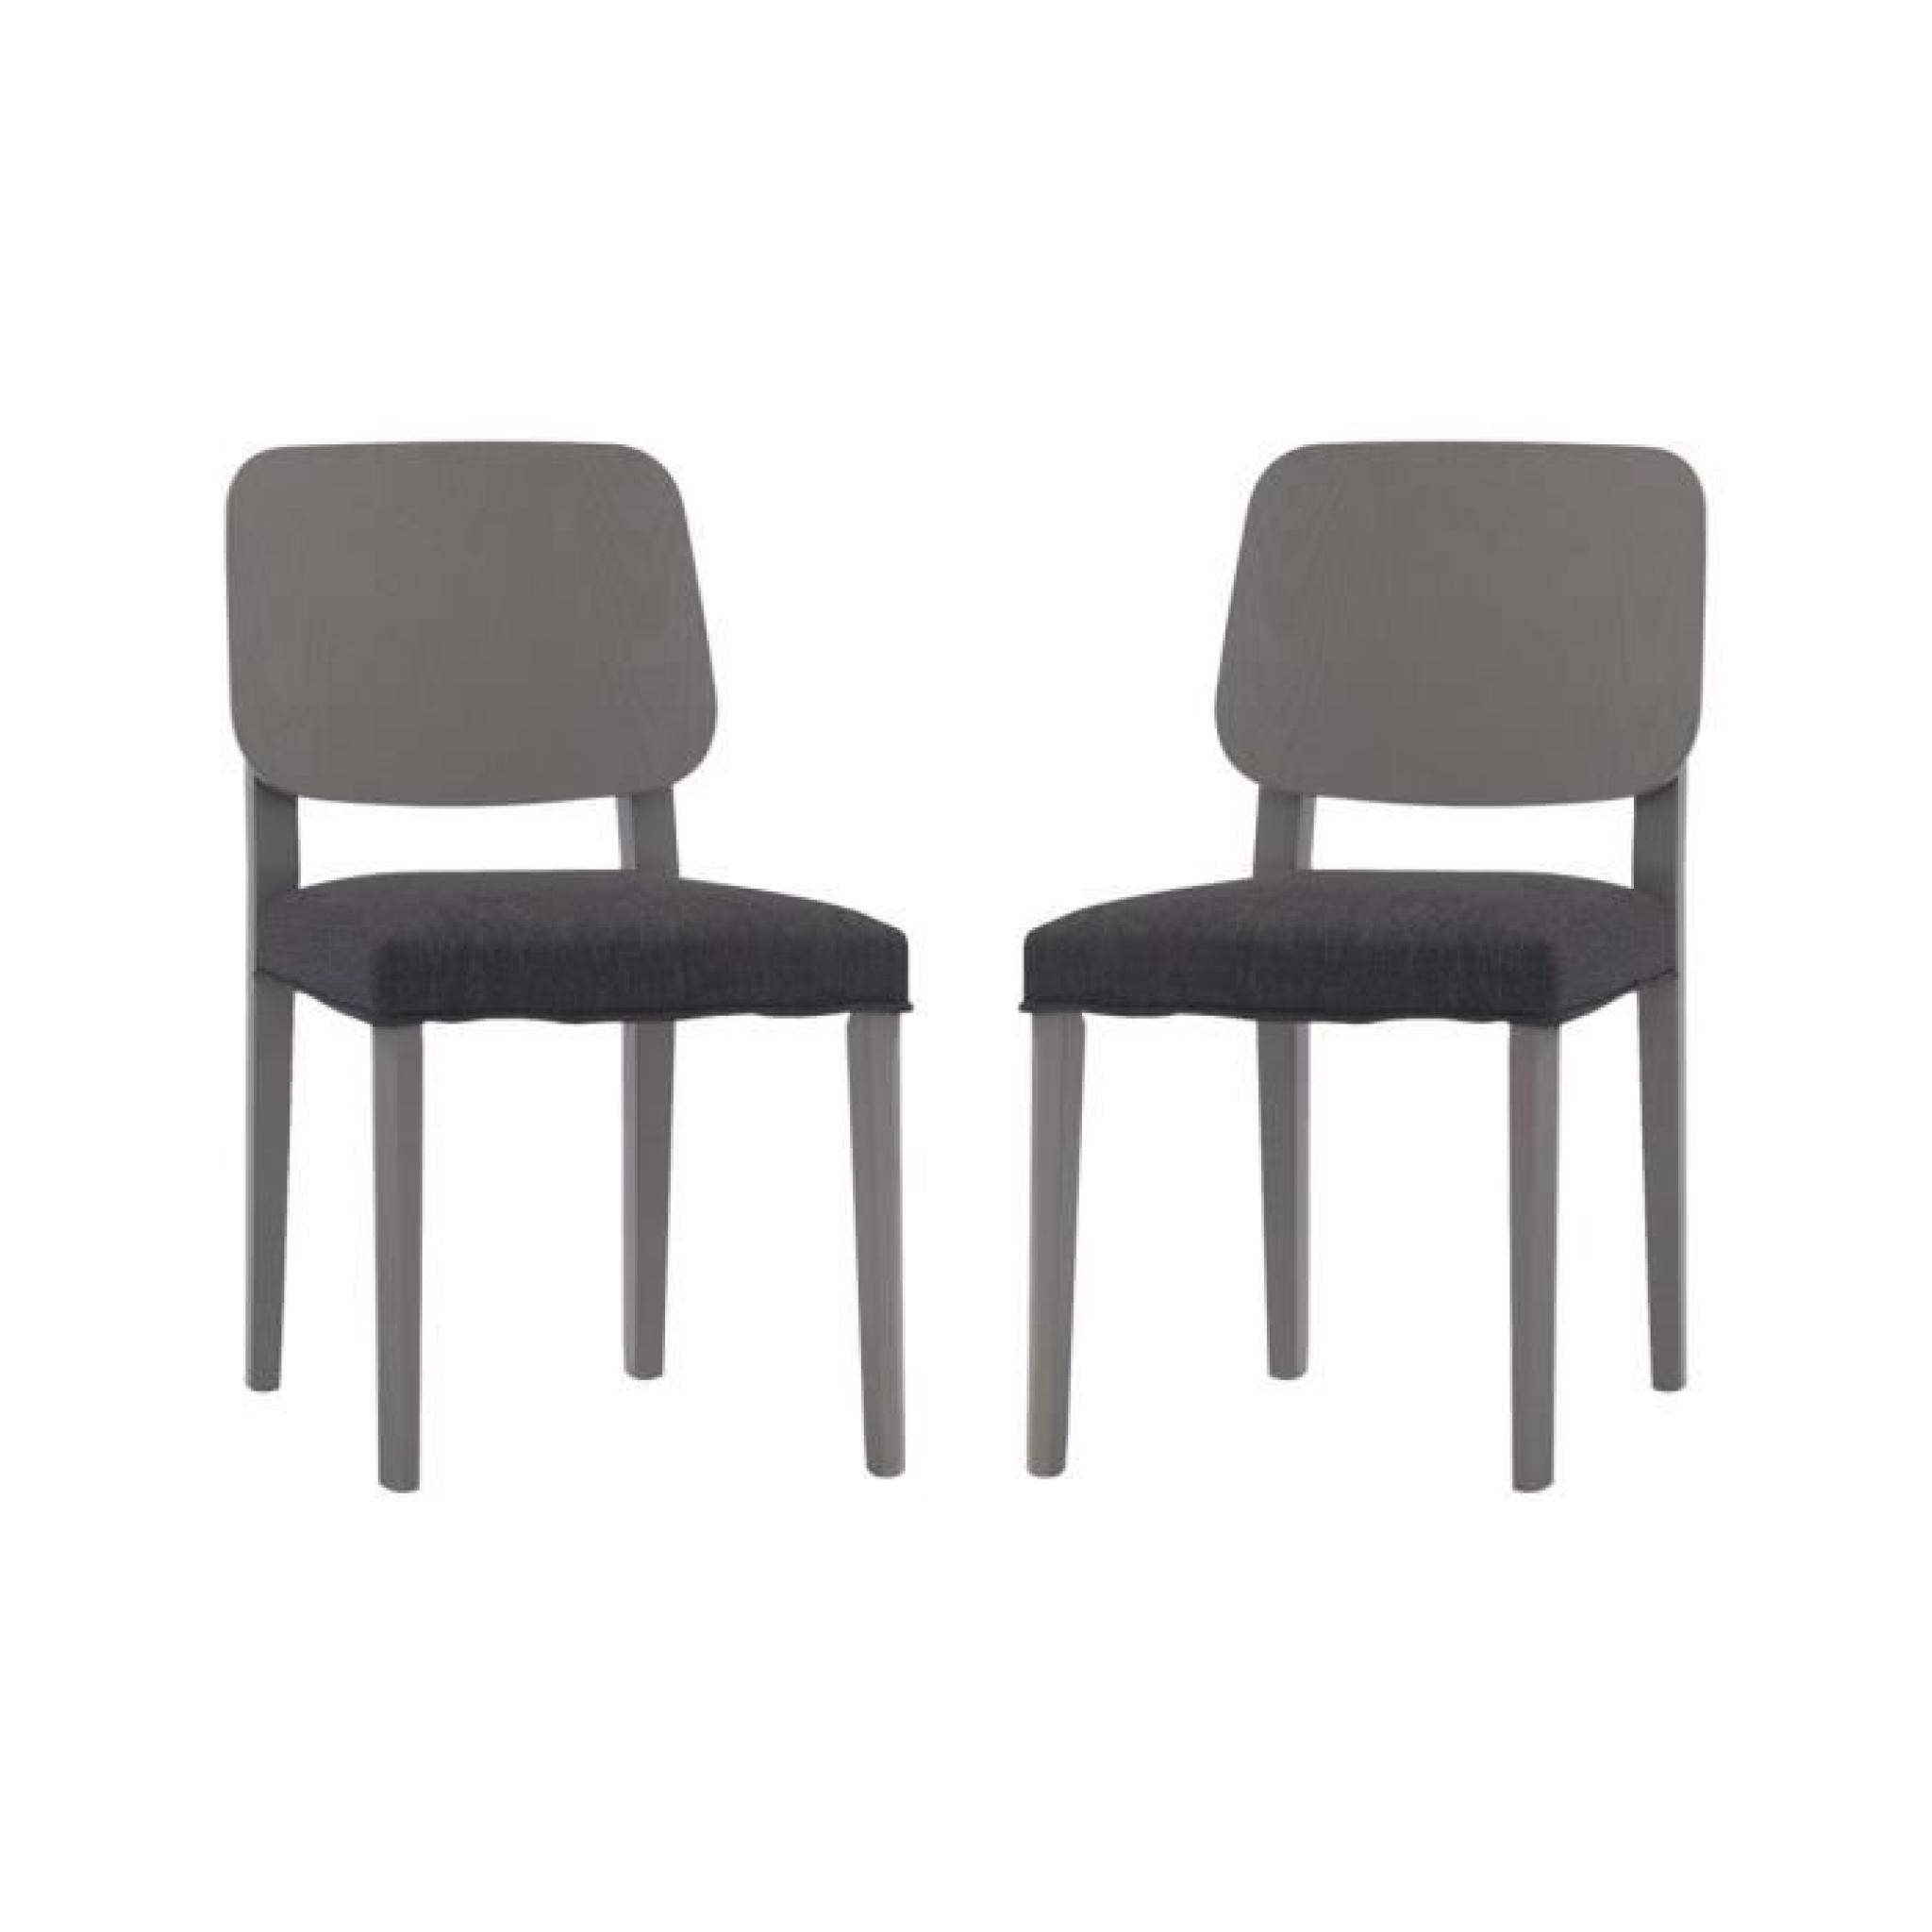 Miliboo - Lot de 2 chaises design bois gris TINA